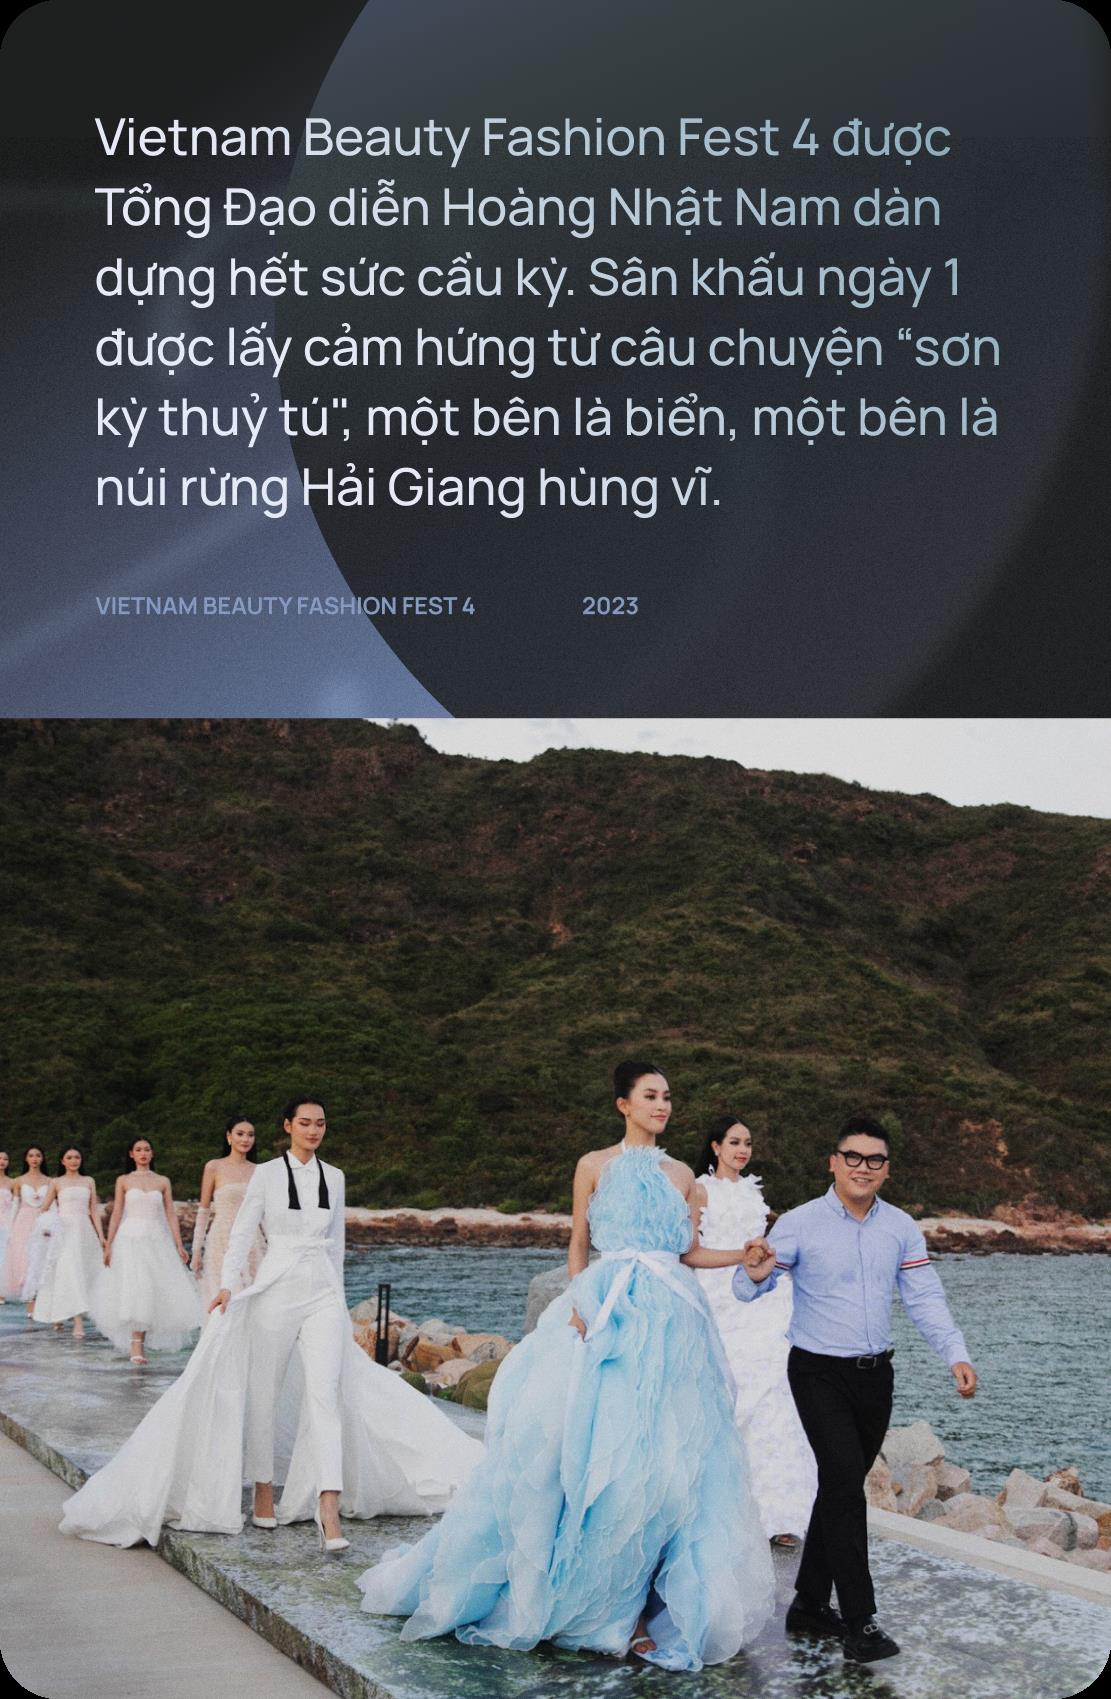 Hai đêm Vietnam Beauty Fashion Fest 4 mãn nhãn quy tụ dàn Hậu đình đám qua bàn tay dàn dựng của tổng đạo diễn Hoàng Nhật Nam - Ảnh 2.